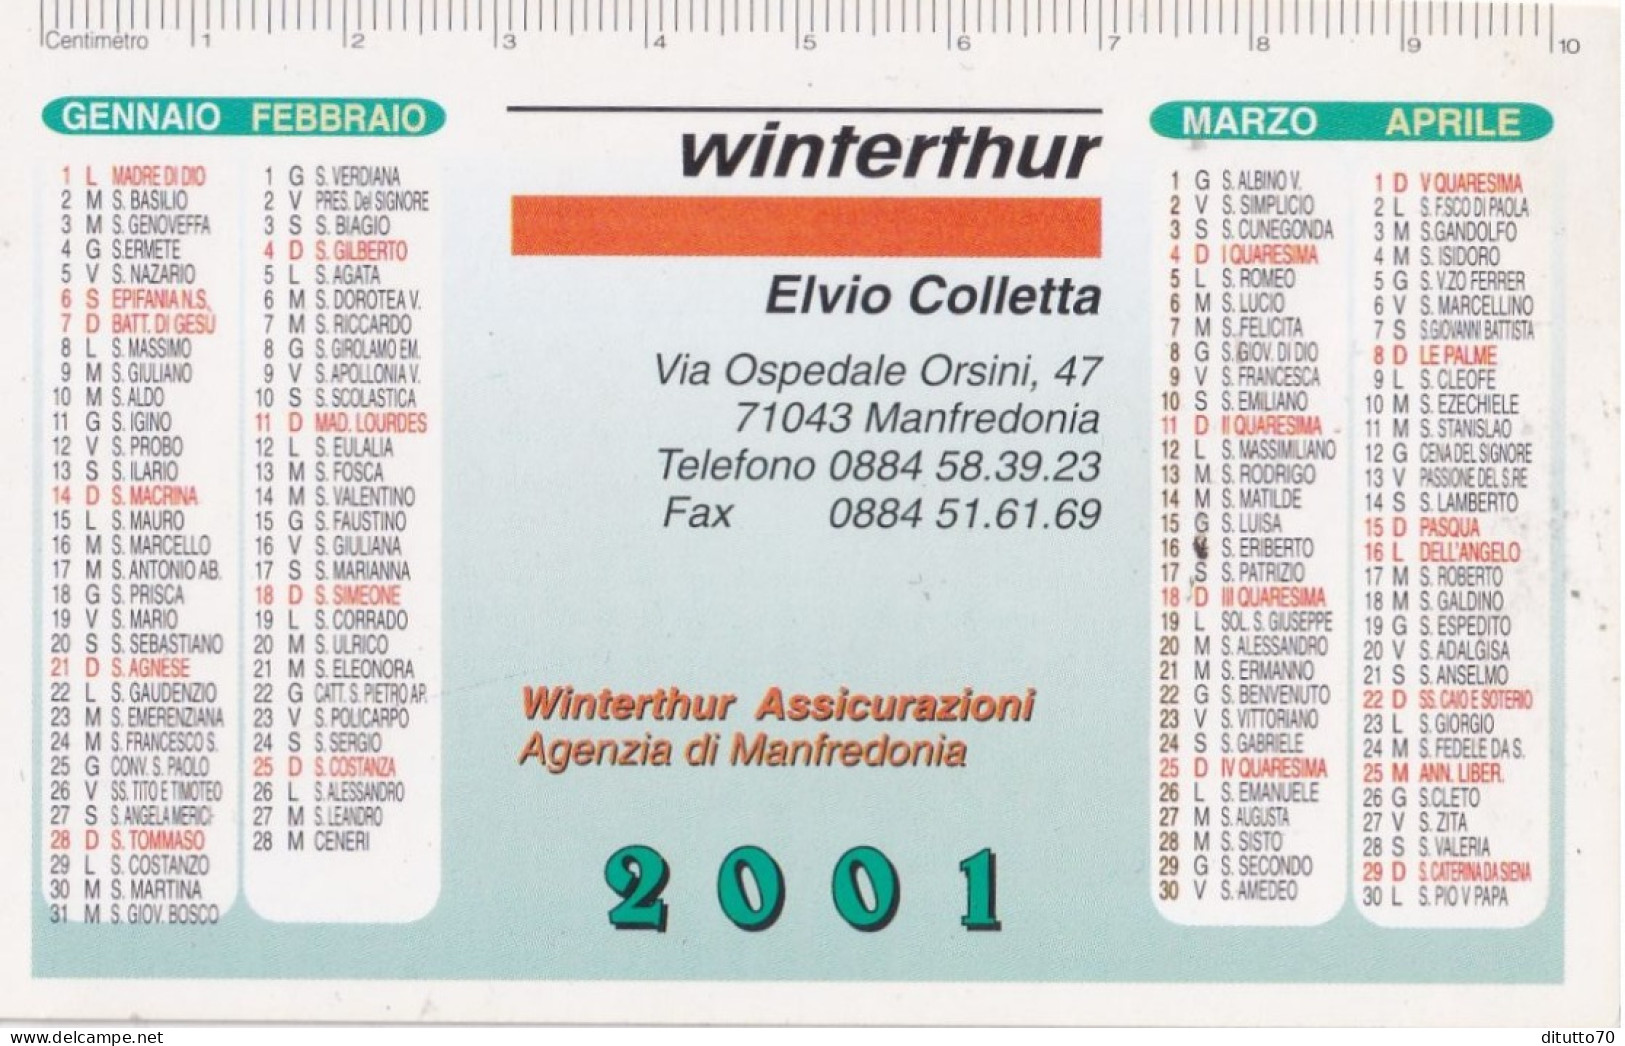 Calendarietto - Winterthur Assicurazioni - Manfredonia - Anno 2001 - Kleinformat : 2001-...